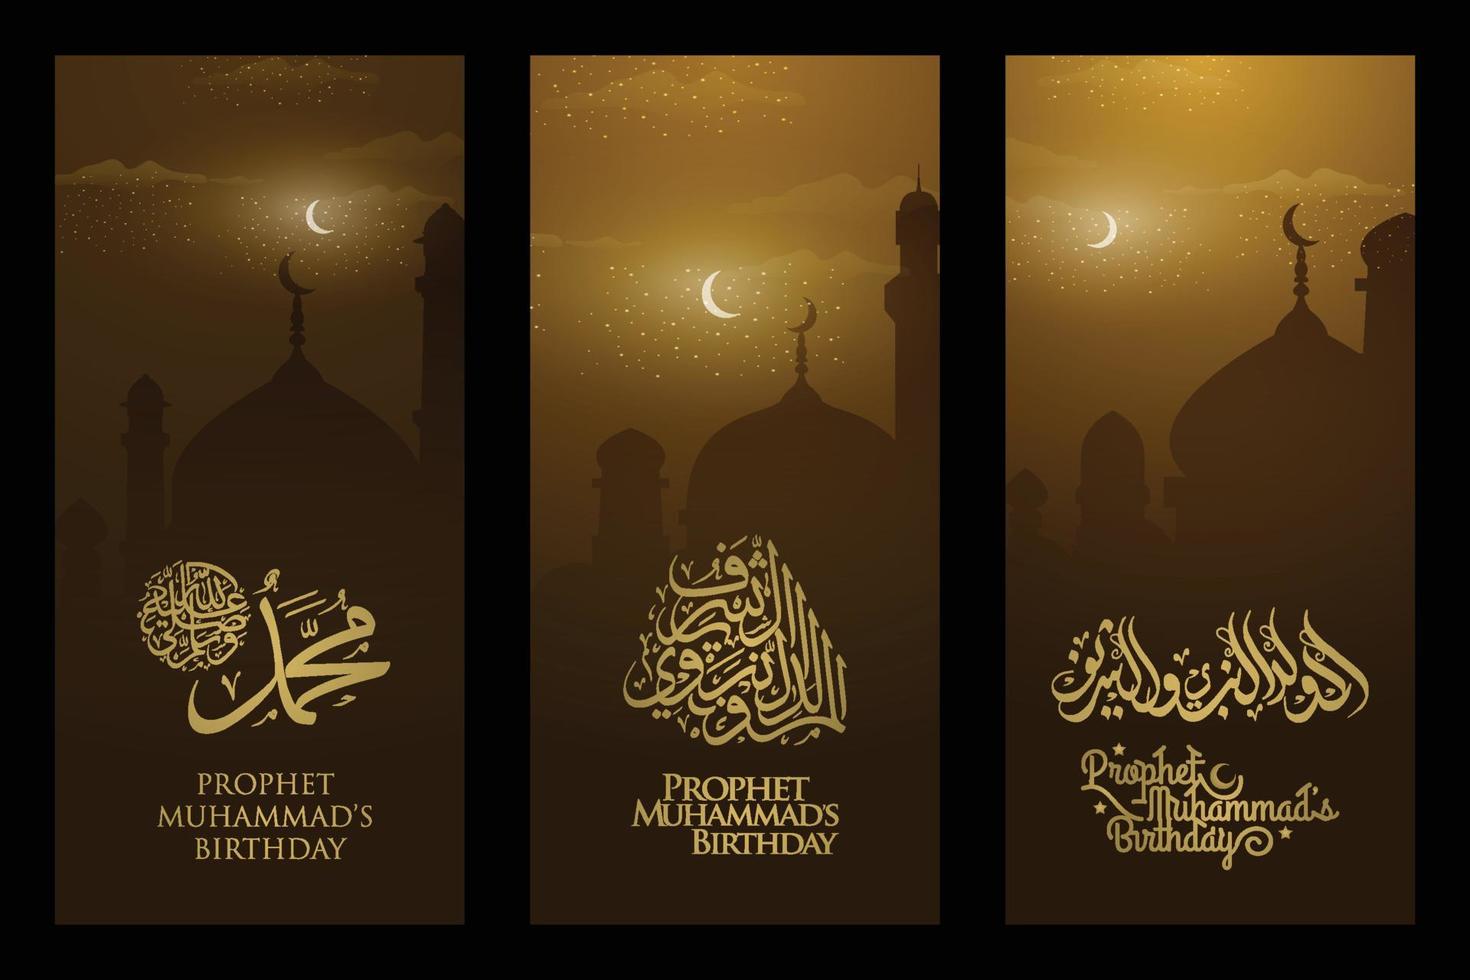 trois ensembles mawlid al-nabi saluant la conception de vecteur de fond illustration islamique avec calligraphie arabe et mosquée pour carte, bannière, papier peint, couverture. la moyenne est l'anniversaire du prophète muhammad